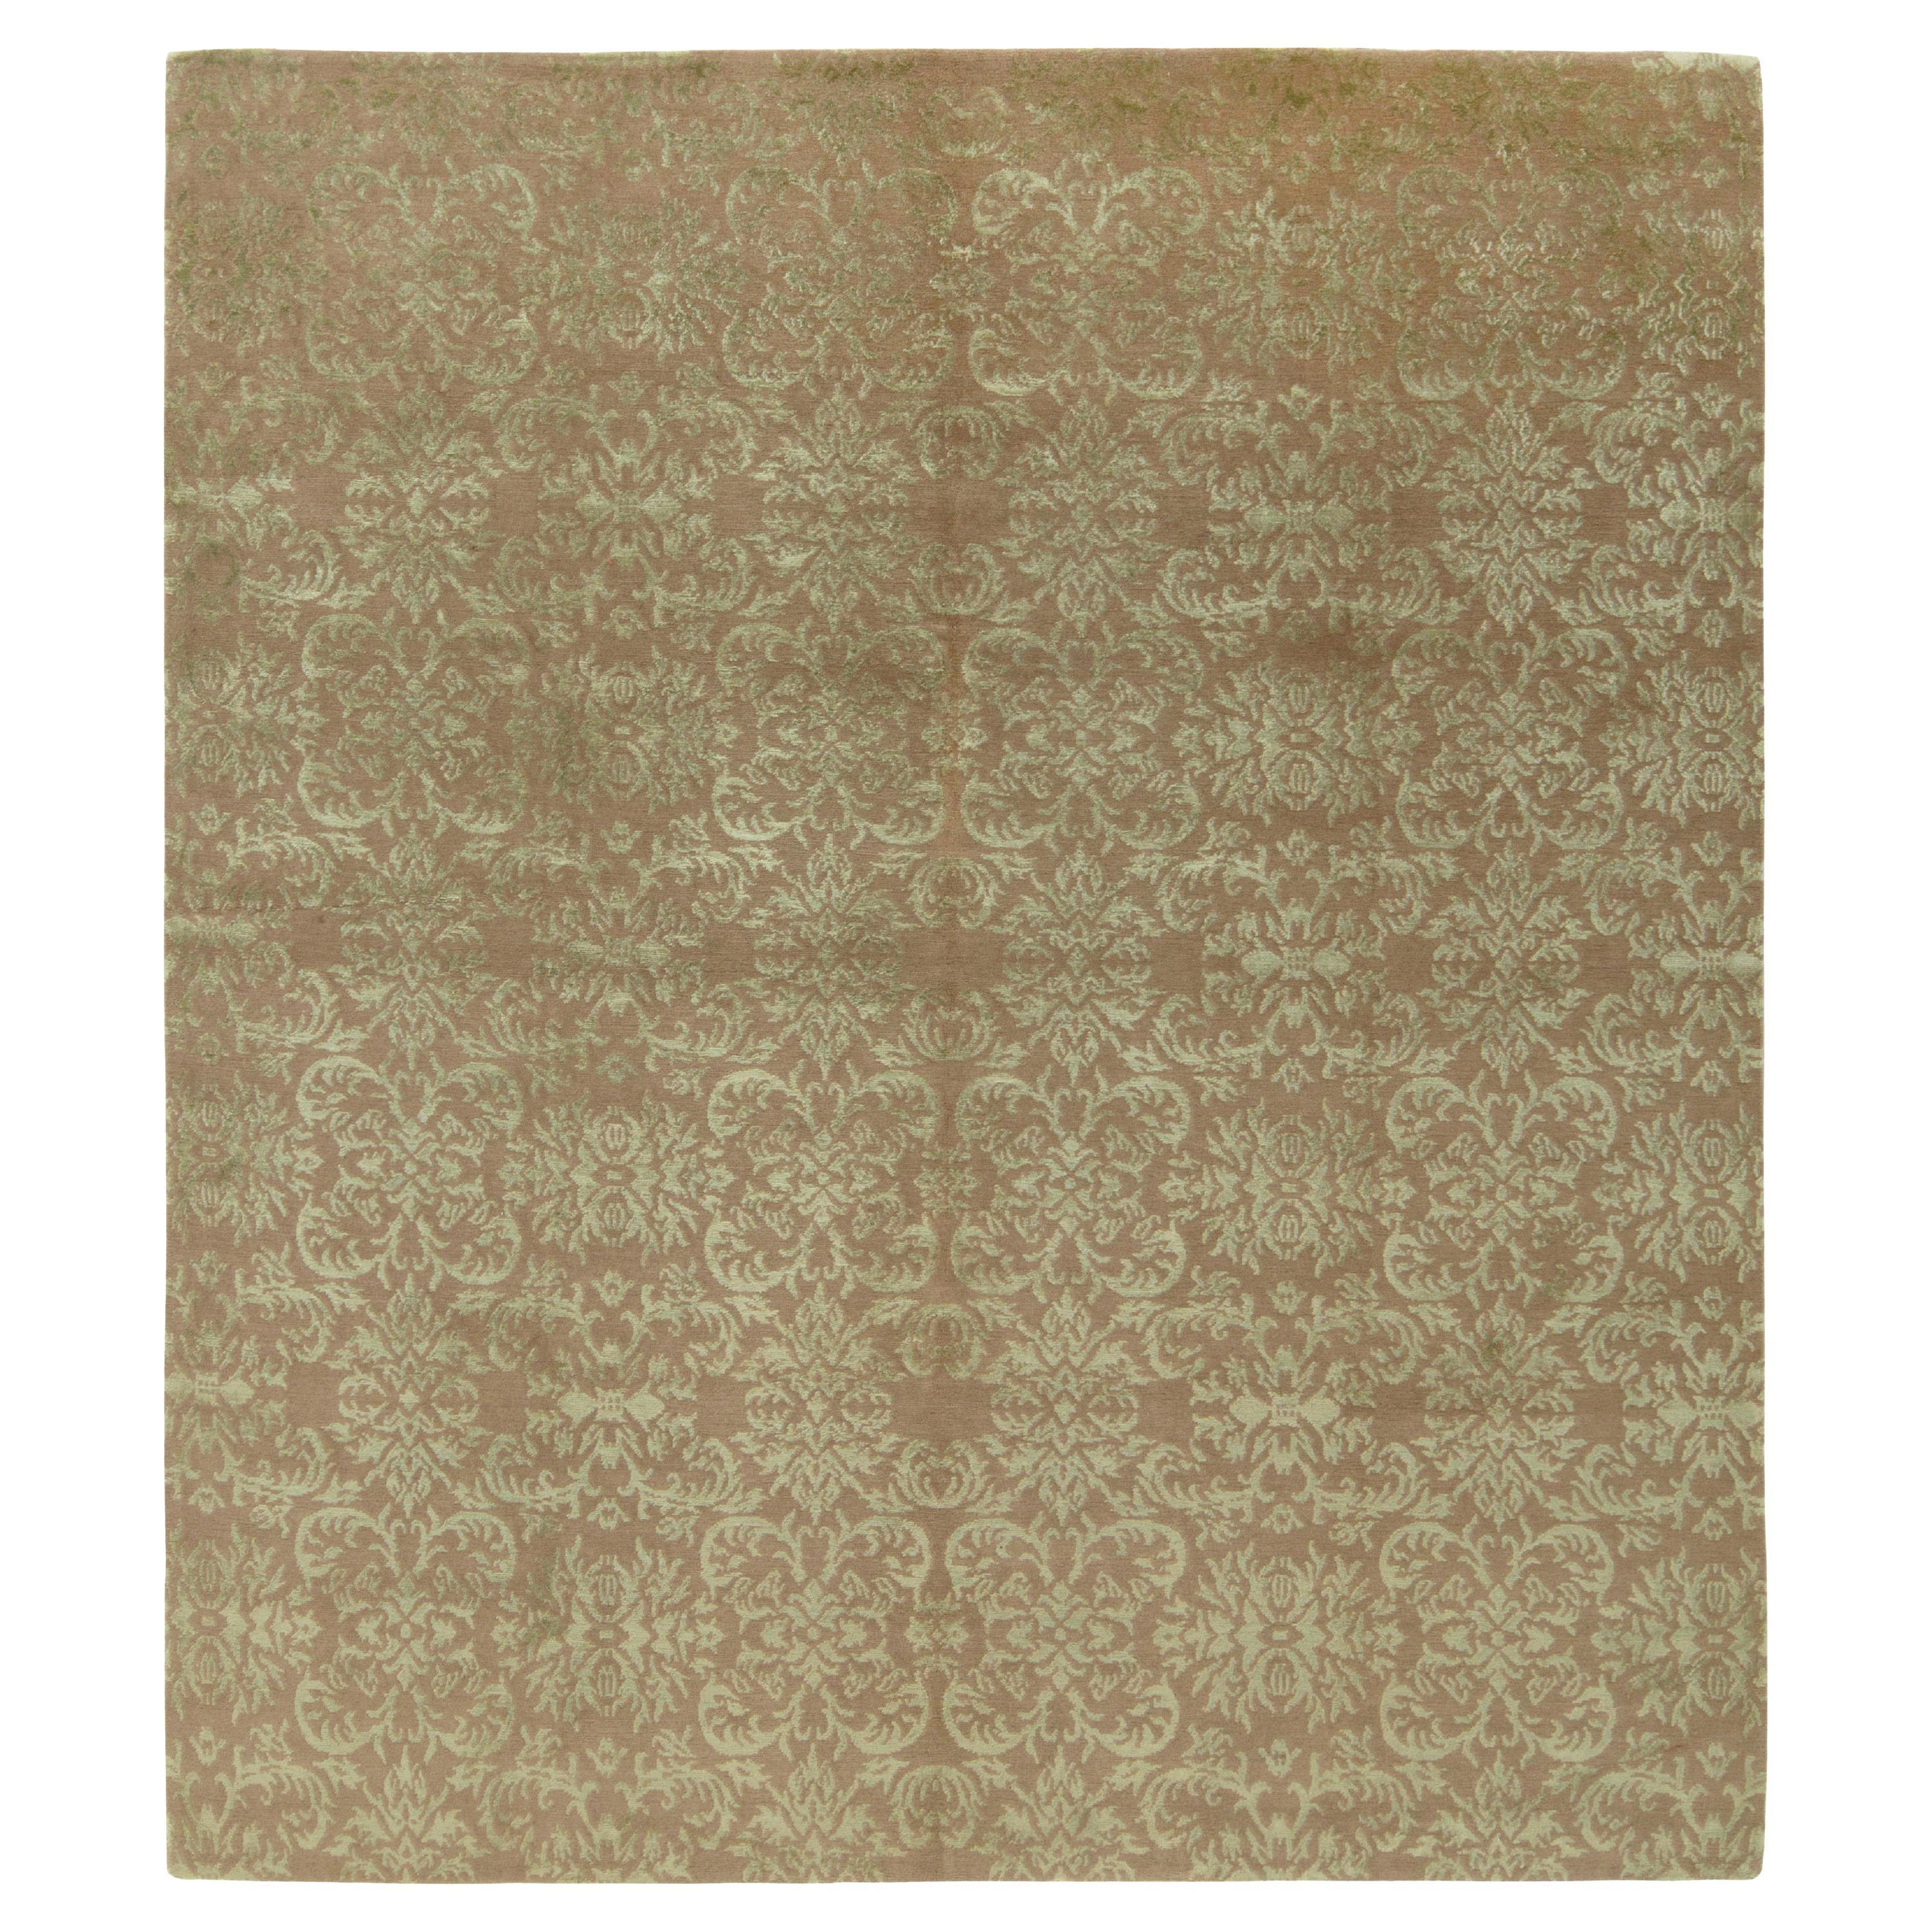 Handgeknüpfter Teppich & Kelim-Teppich im klassischen europäischen Stil mit beigem und braunem Blumenmuster